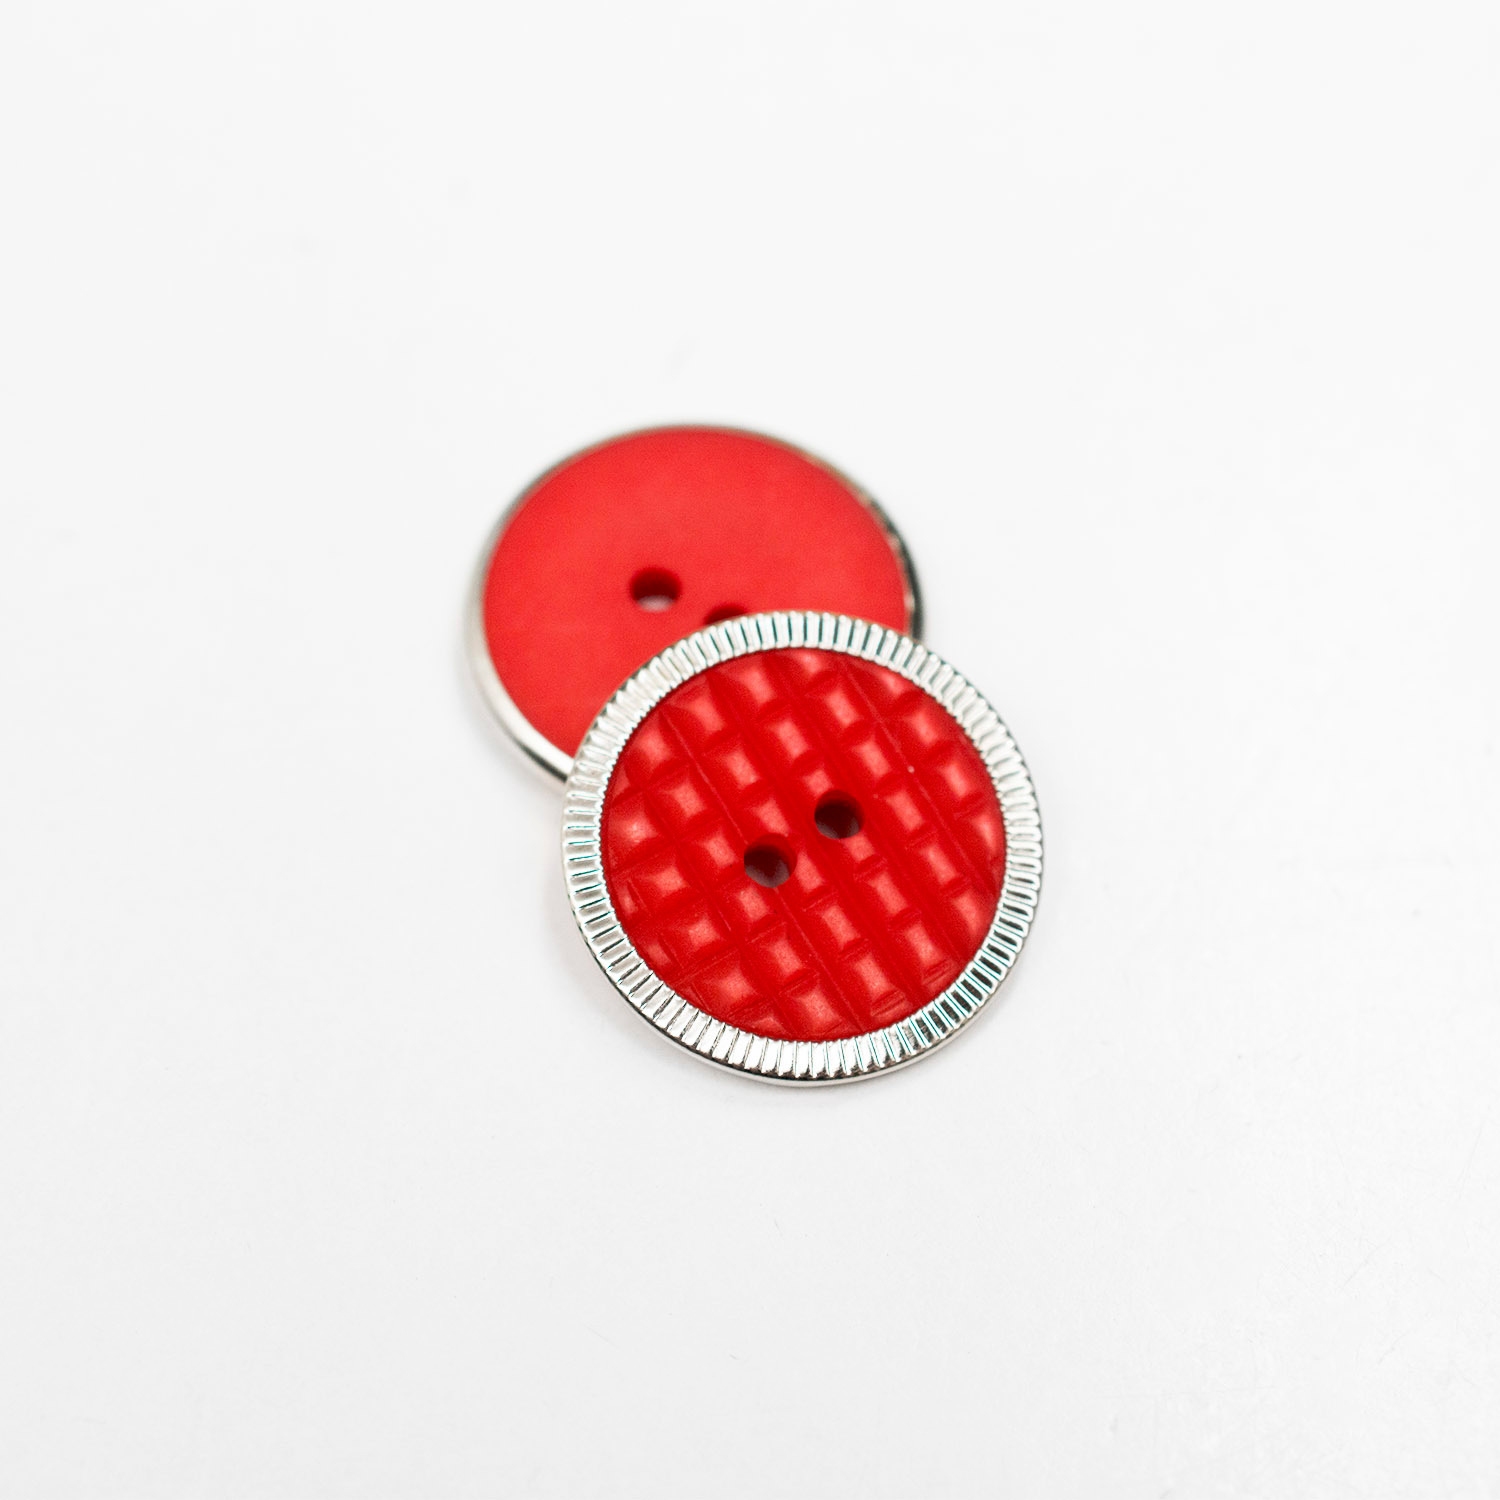 Plastikowy guzik przyszywany na dwie dziurki, w kolorze czerwonym.